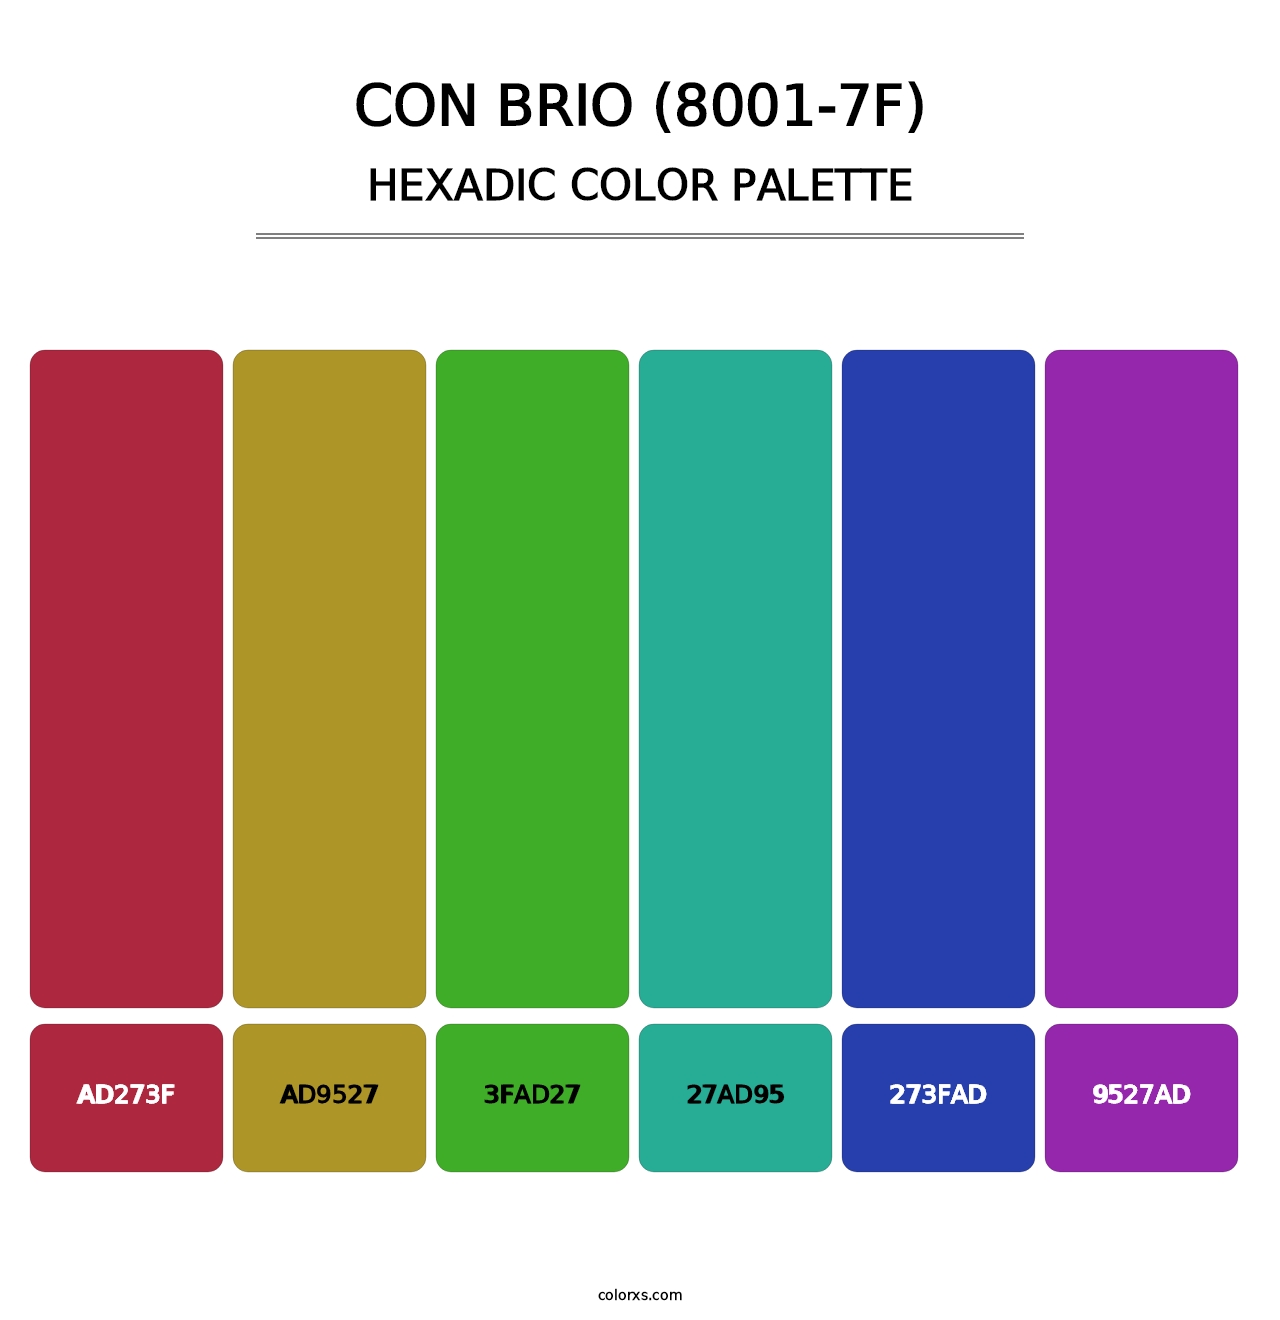 Con Brio (8001-7F) - Hexadic Color Palette